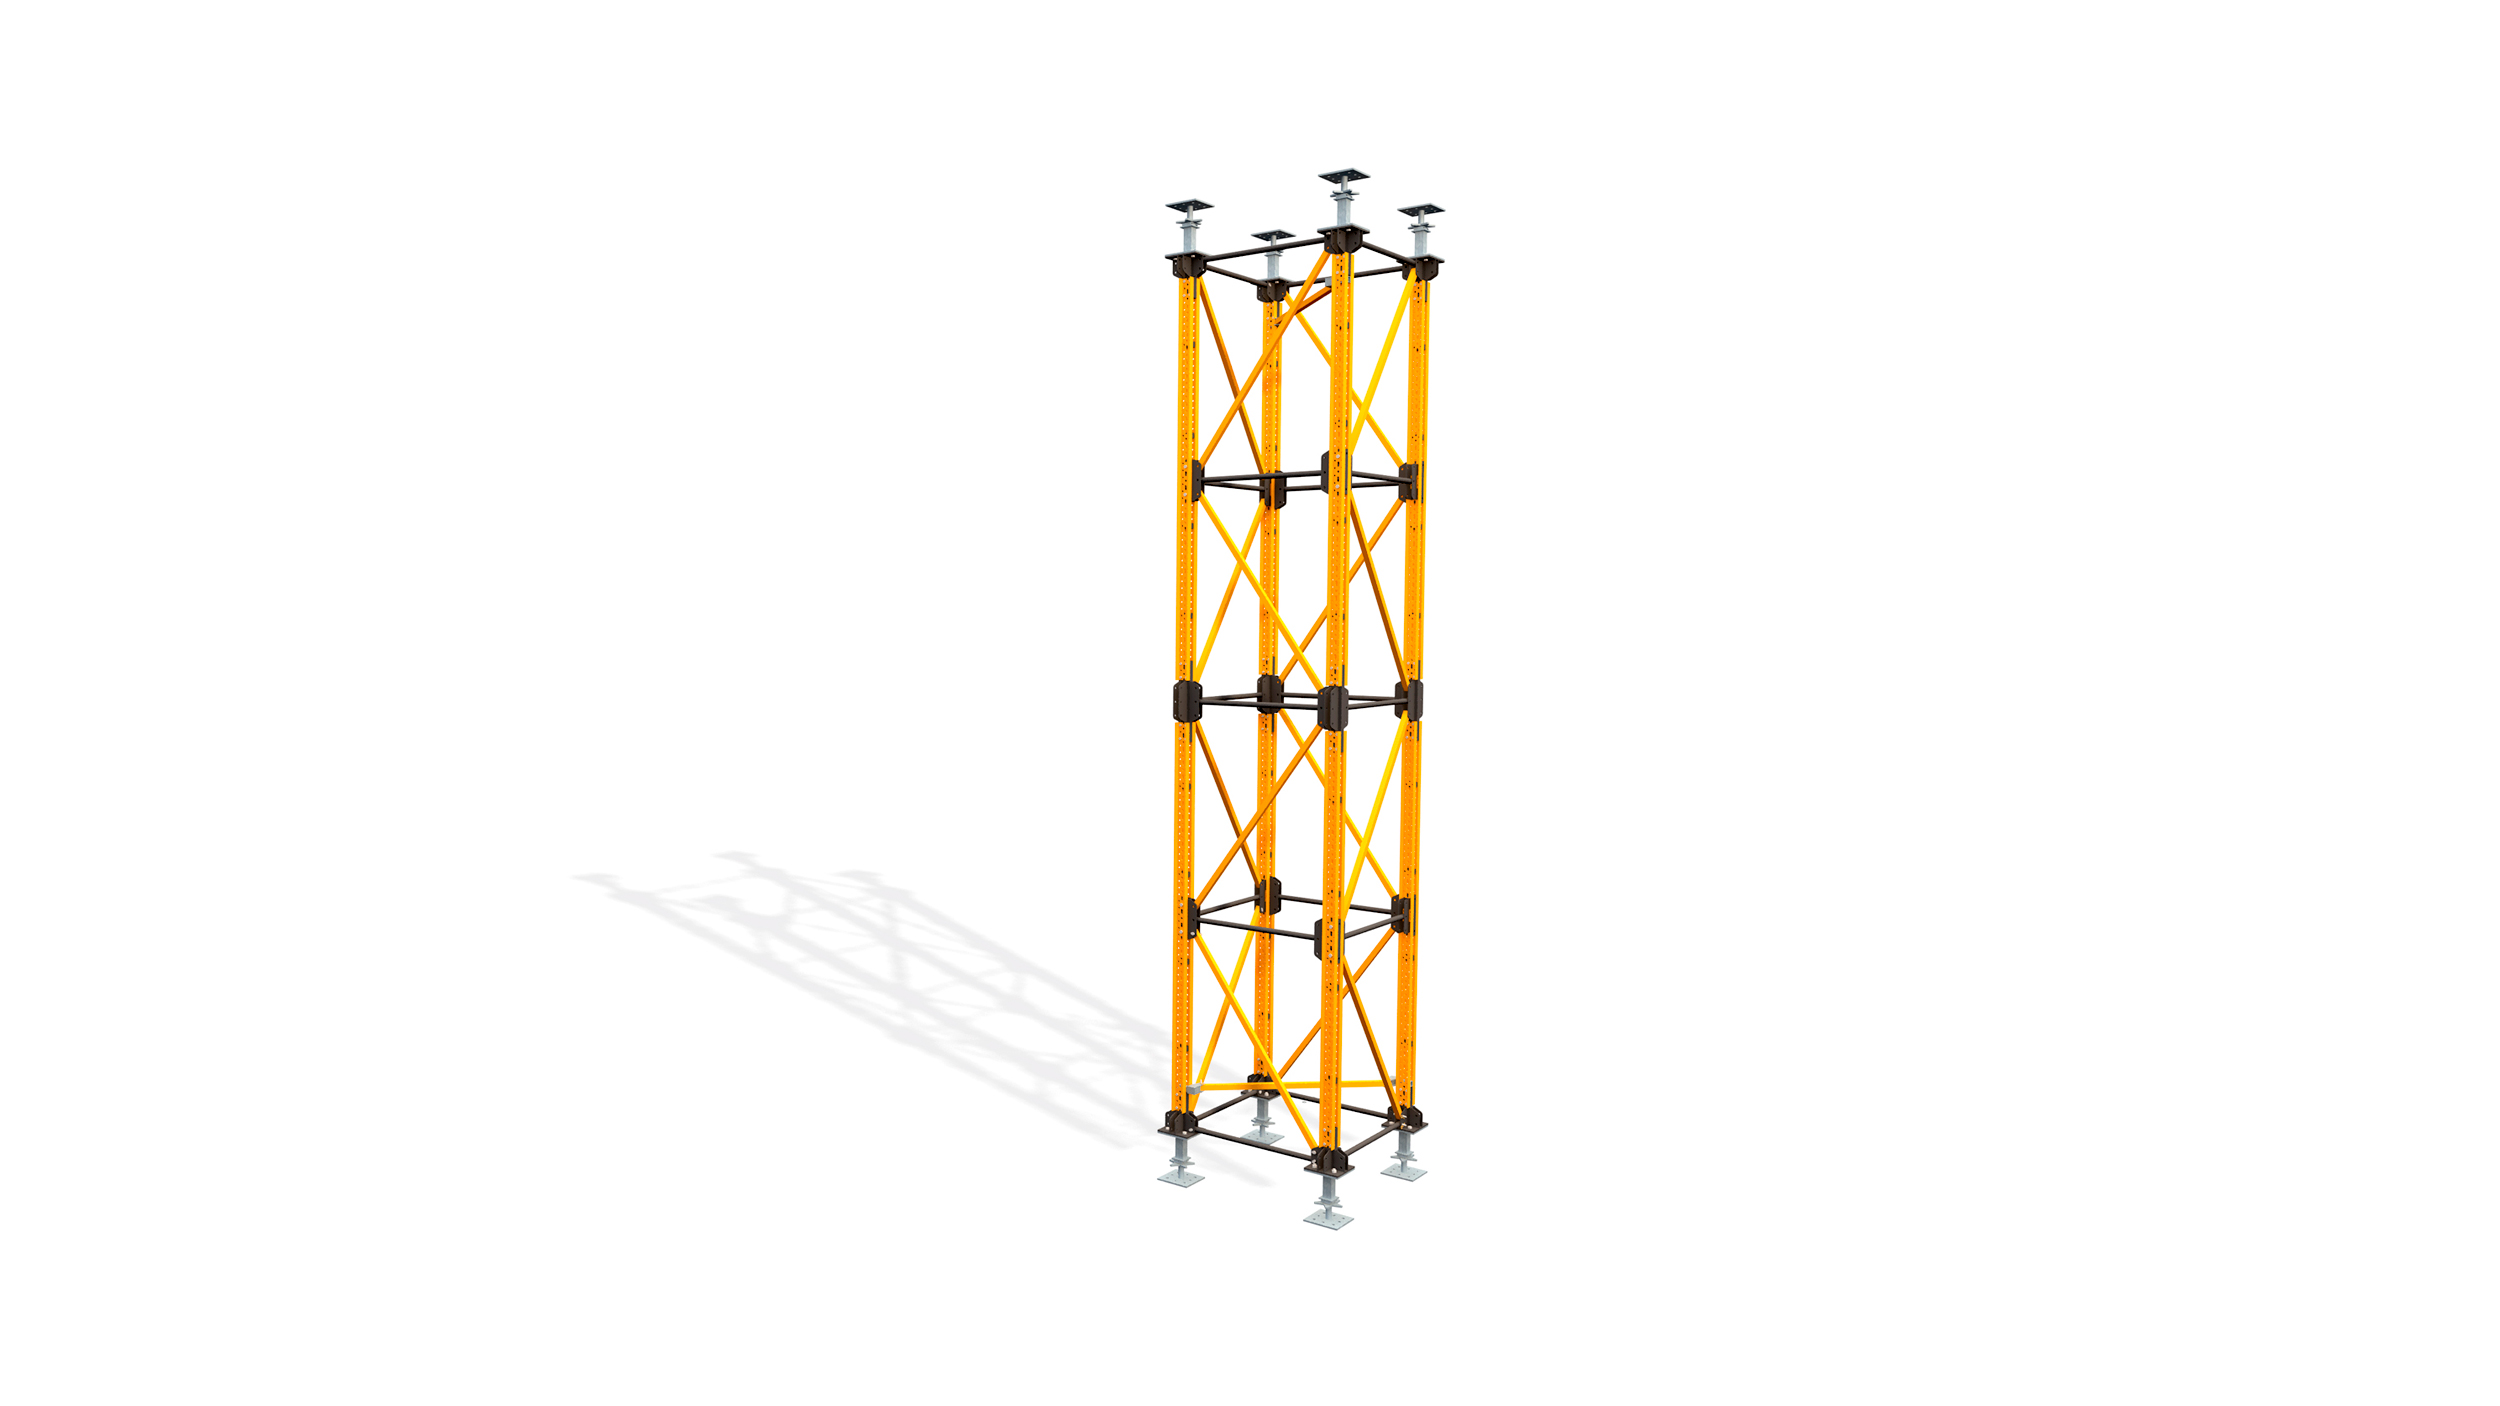 Der ultimative Schwerlast-Stützturm für den Tiefbau. Highlights: wenige Bauteile für vielfältige Traggerüstkonfigurationen, schneller und sicherer Aufbau vor Ort.